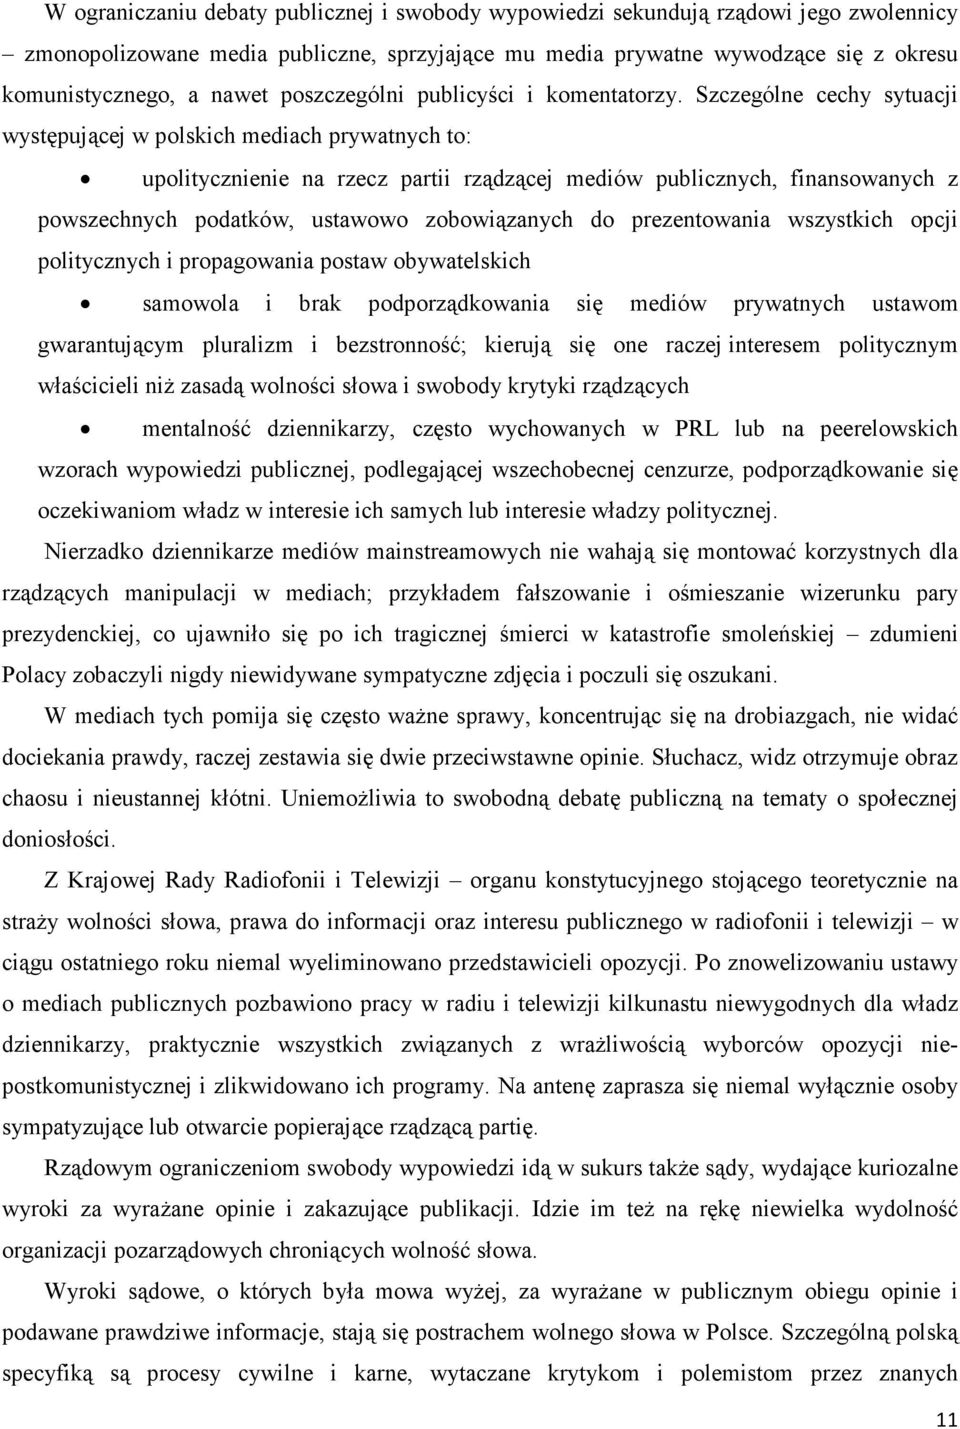 Szczególne cechy sytuacji występującej w polskich mediach prywatnych to: upolitycznienie na rzecz partii rządzącej mediów publicznych, finansowanych z powszechnych podatków, ustawowo zobowiązanych do